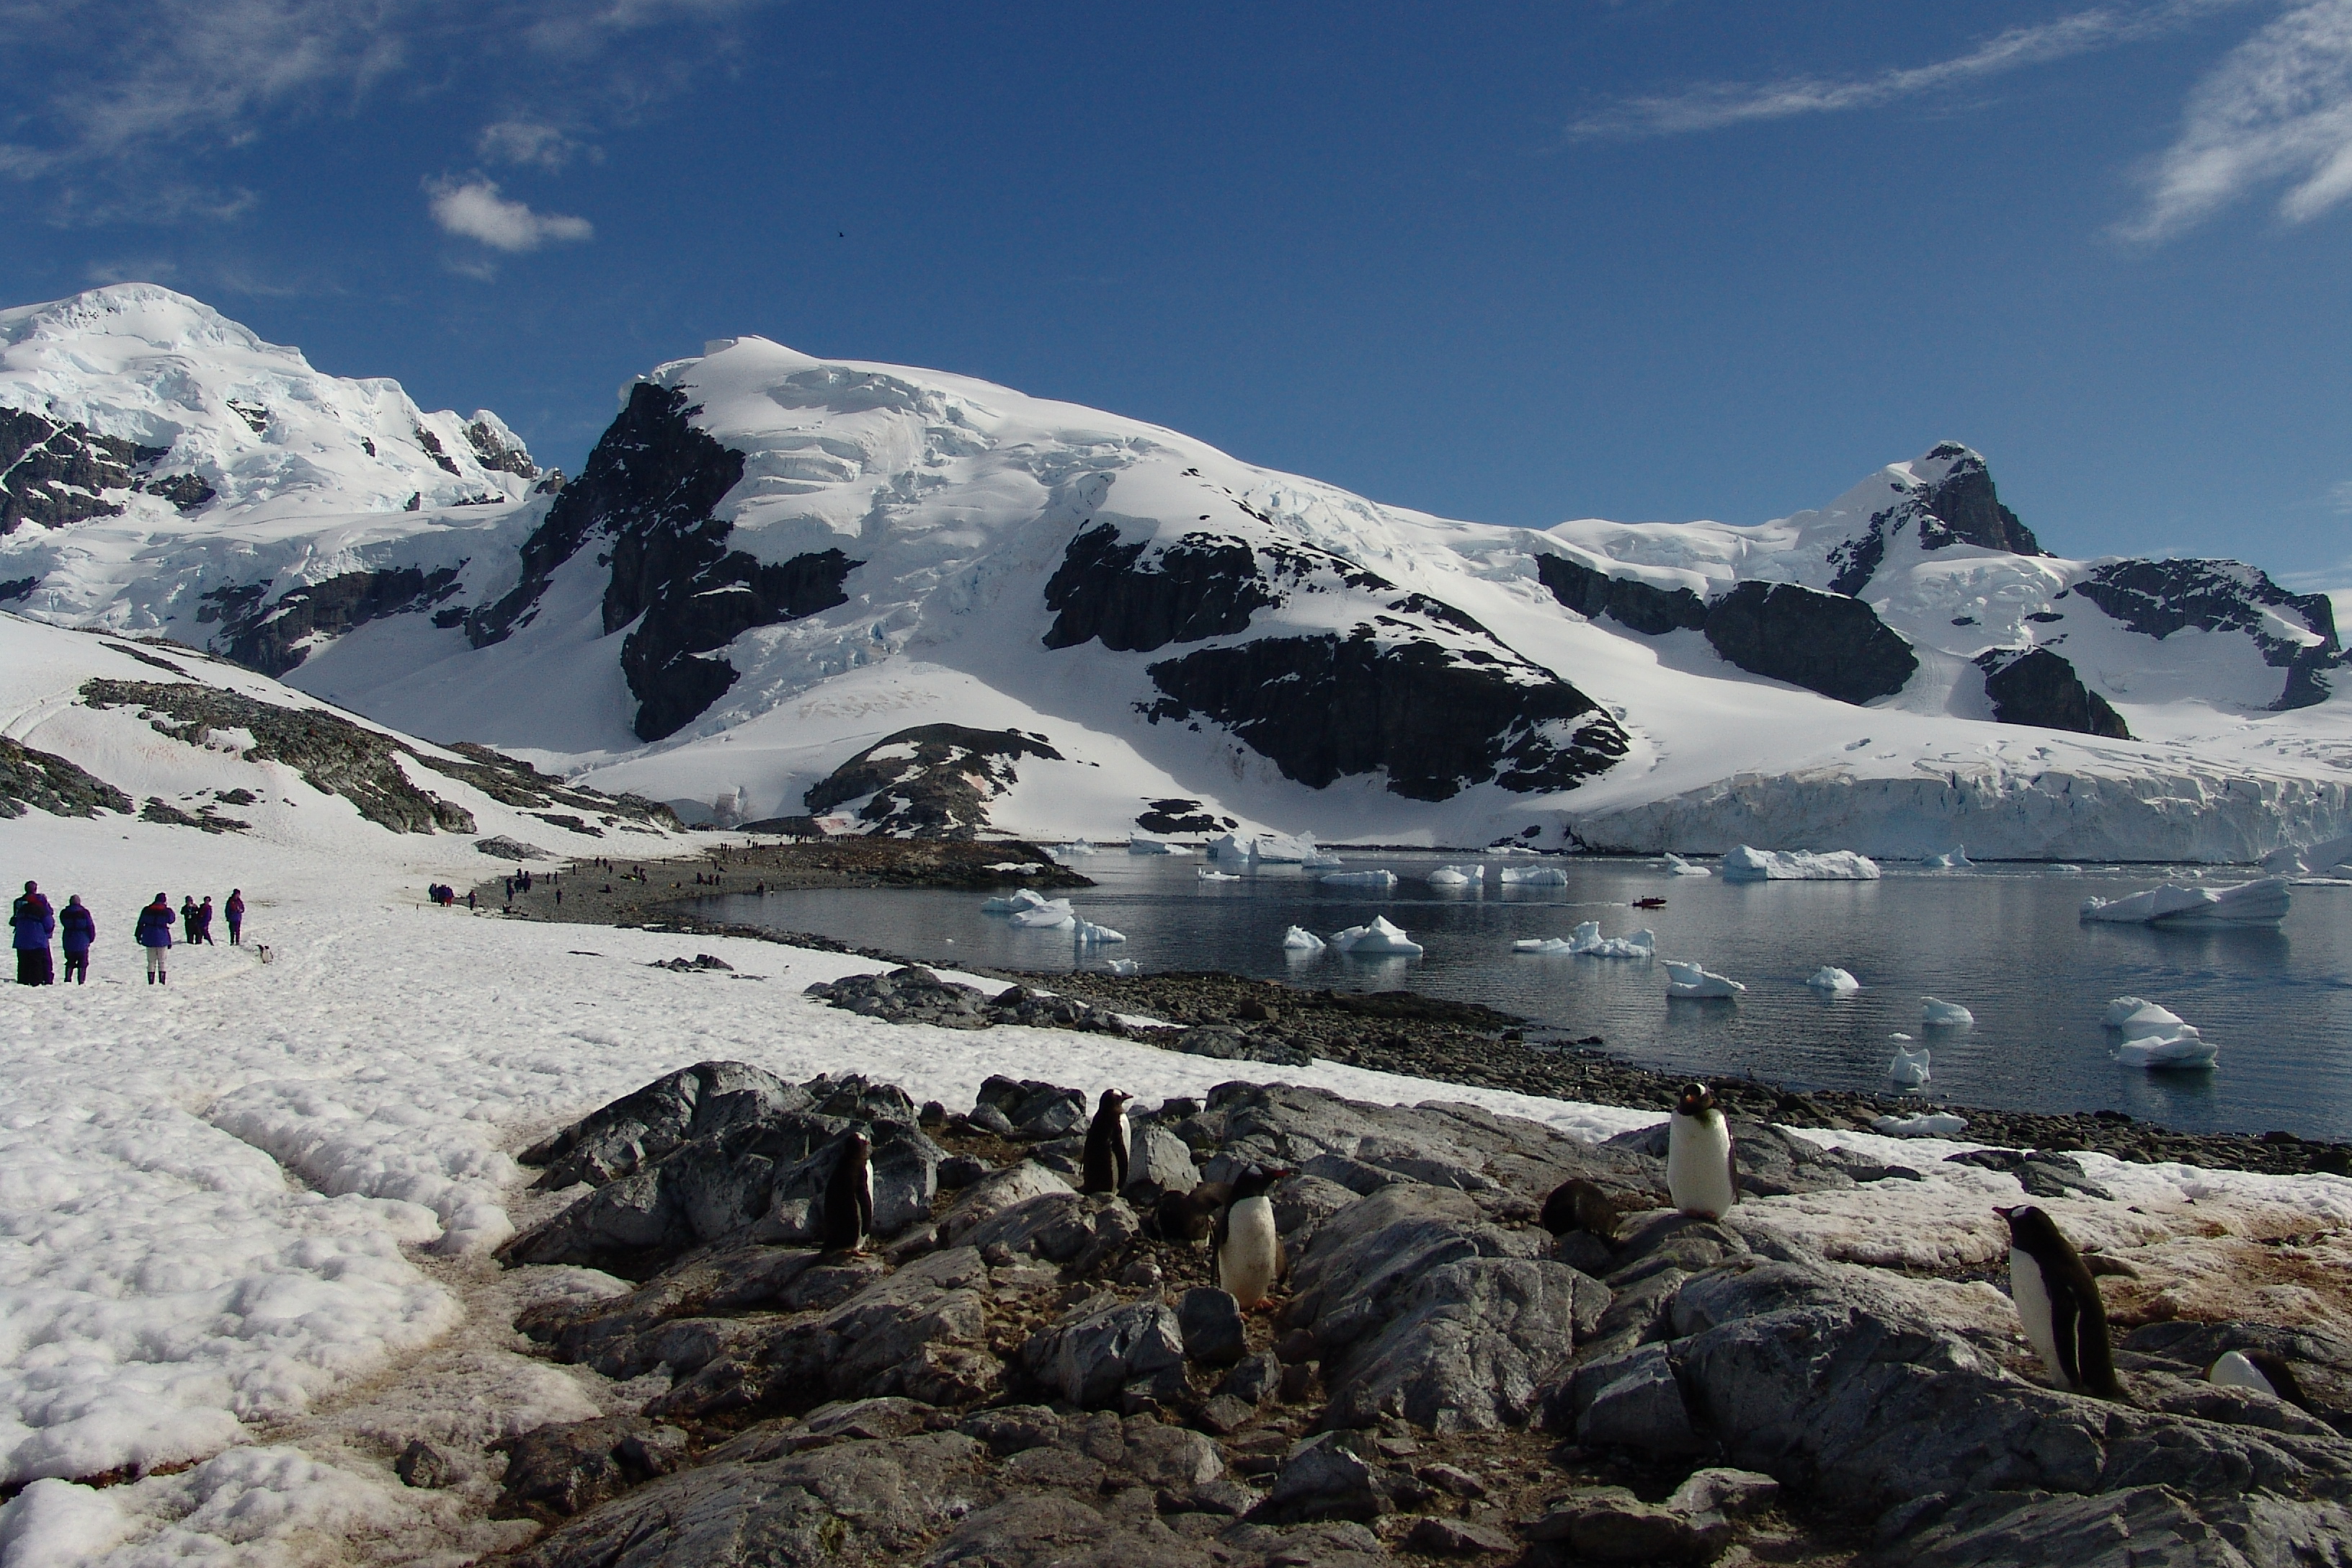 Antarctica Landscape Photo Credit: Horacio Lyon via flickr